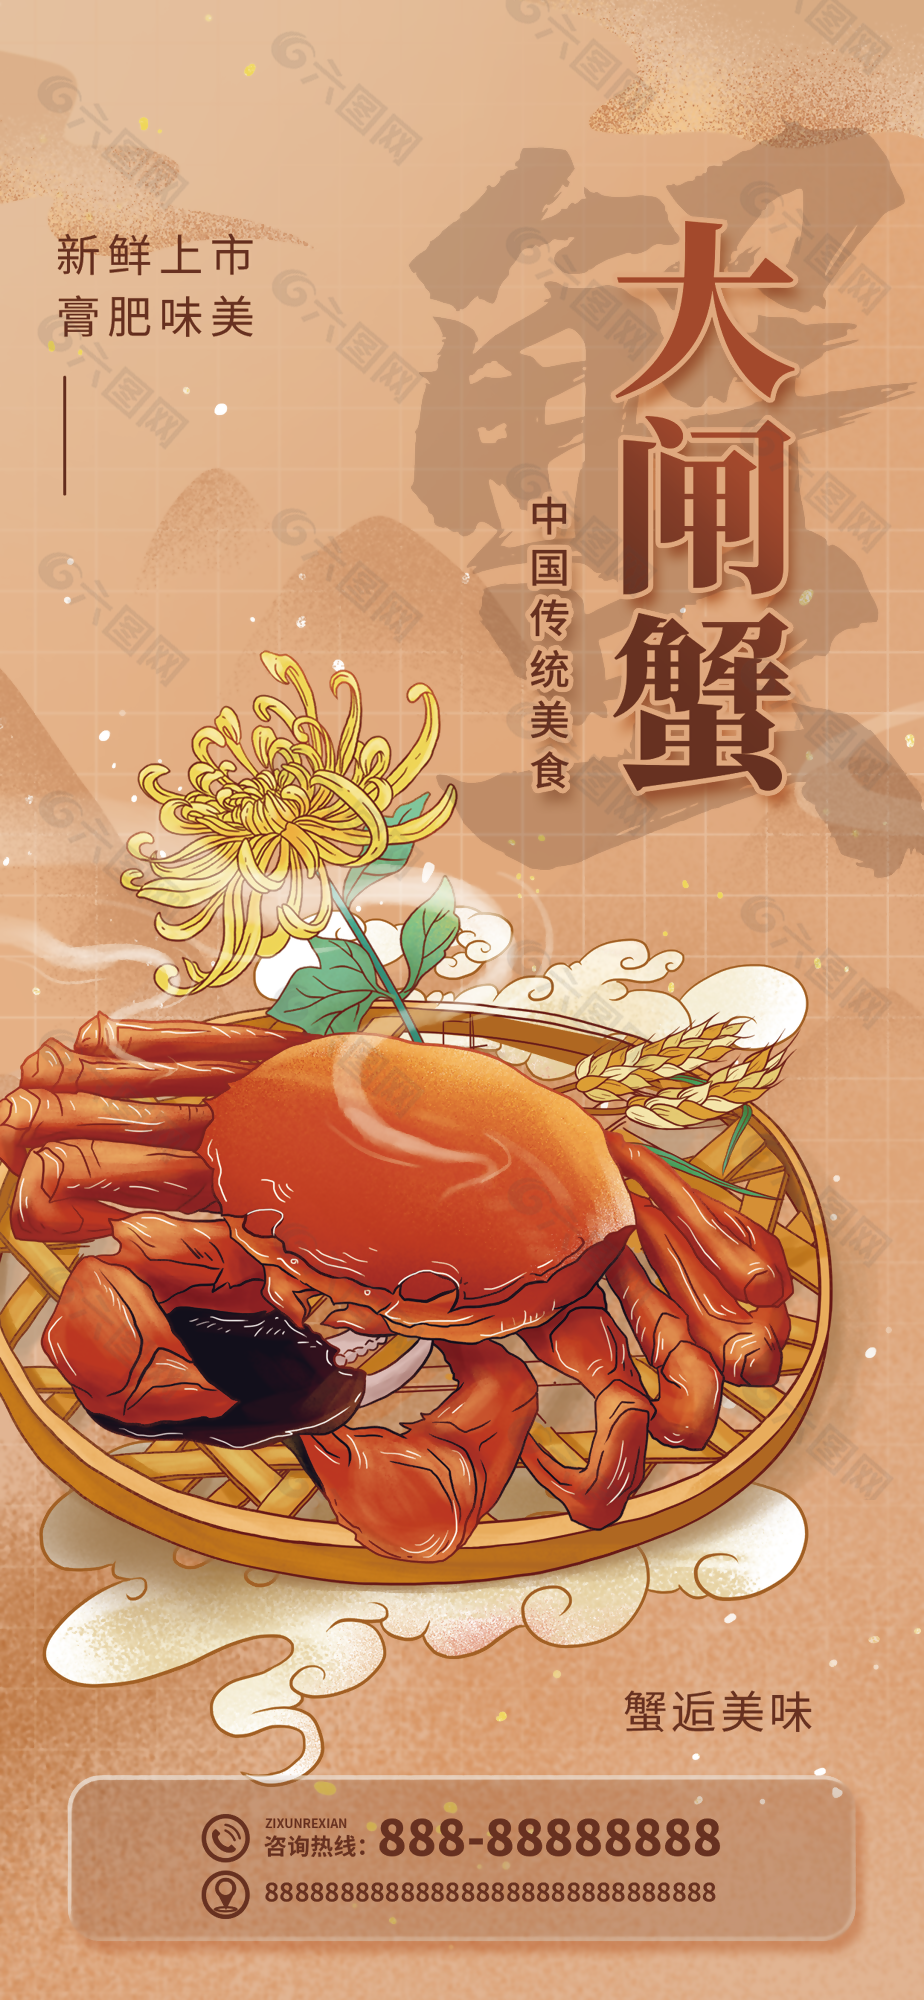 手绘风中华传统美食大闸蟹海报素材设计